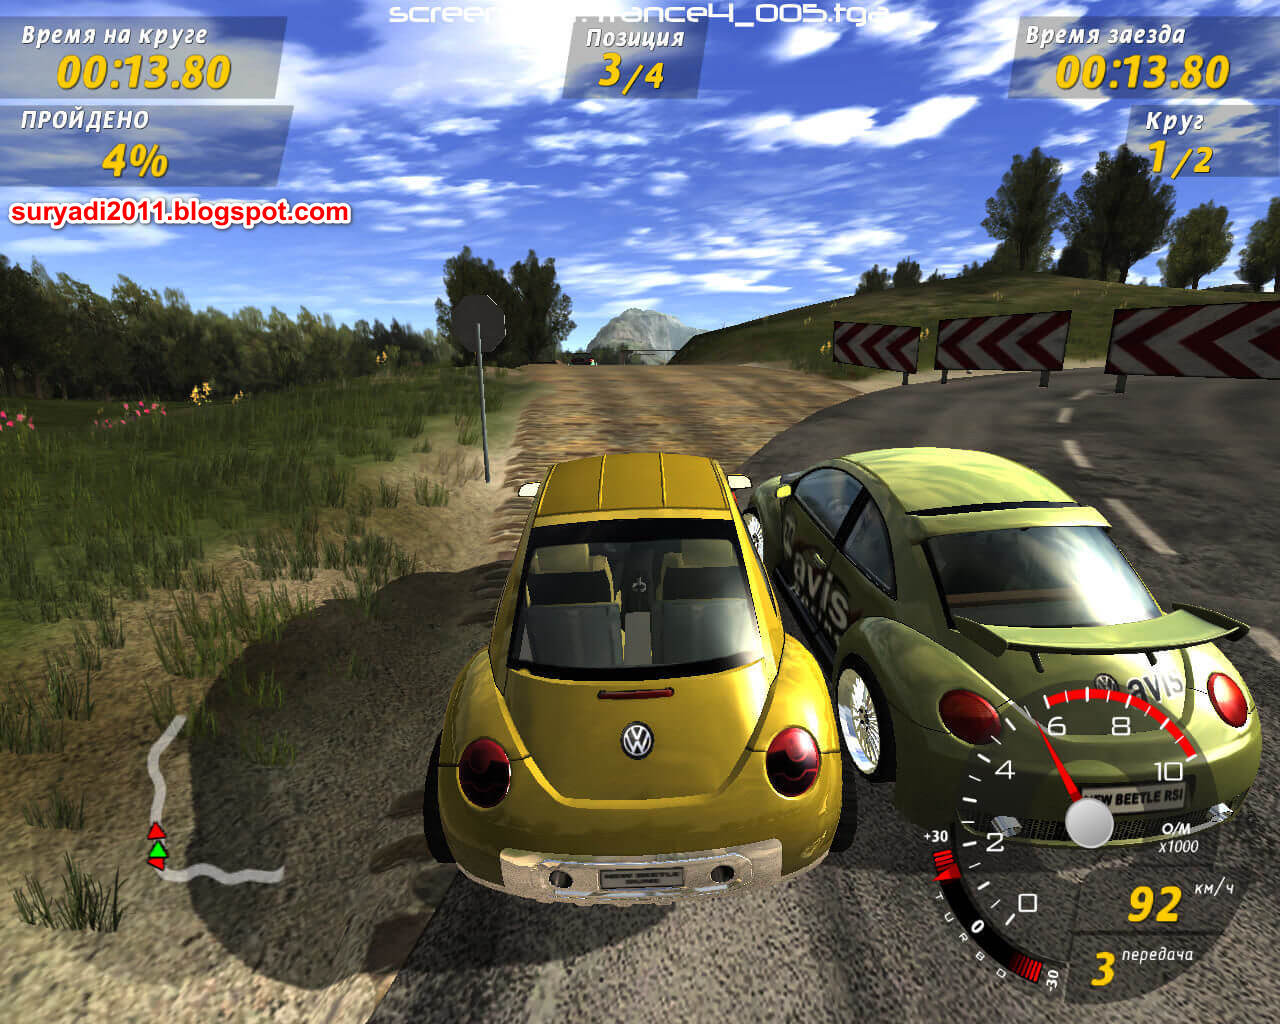 Volkswagen игра. GTI Racing игра. Диск игры GTI Racing. Игра Volkswagen GTI Racing. GTI Racing PC.